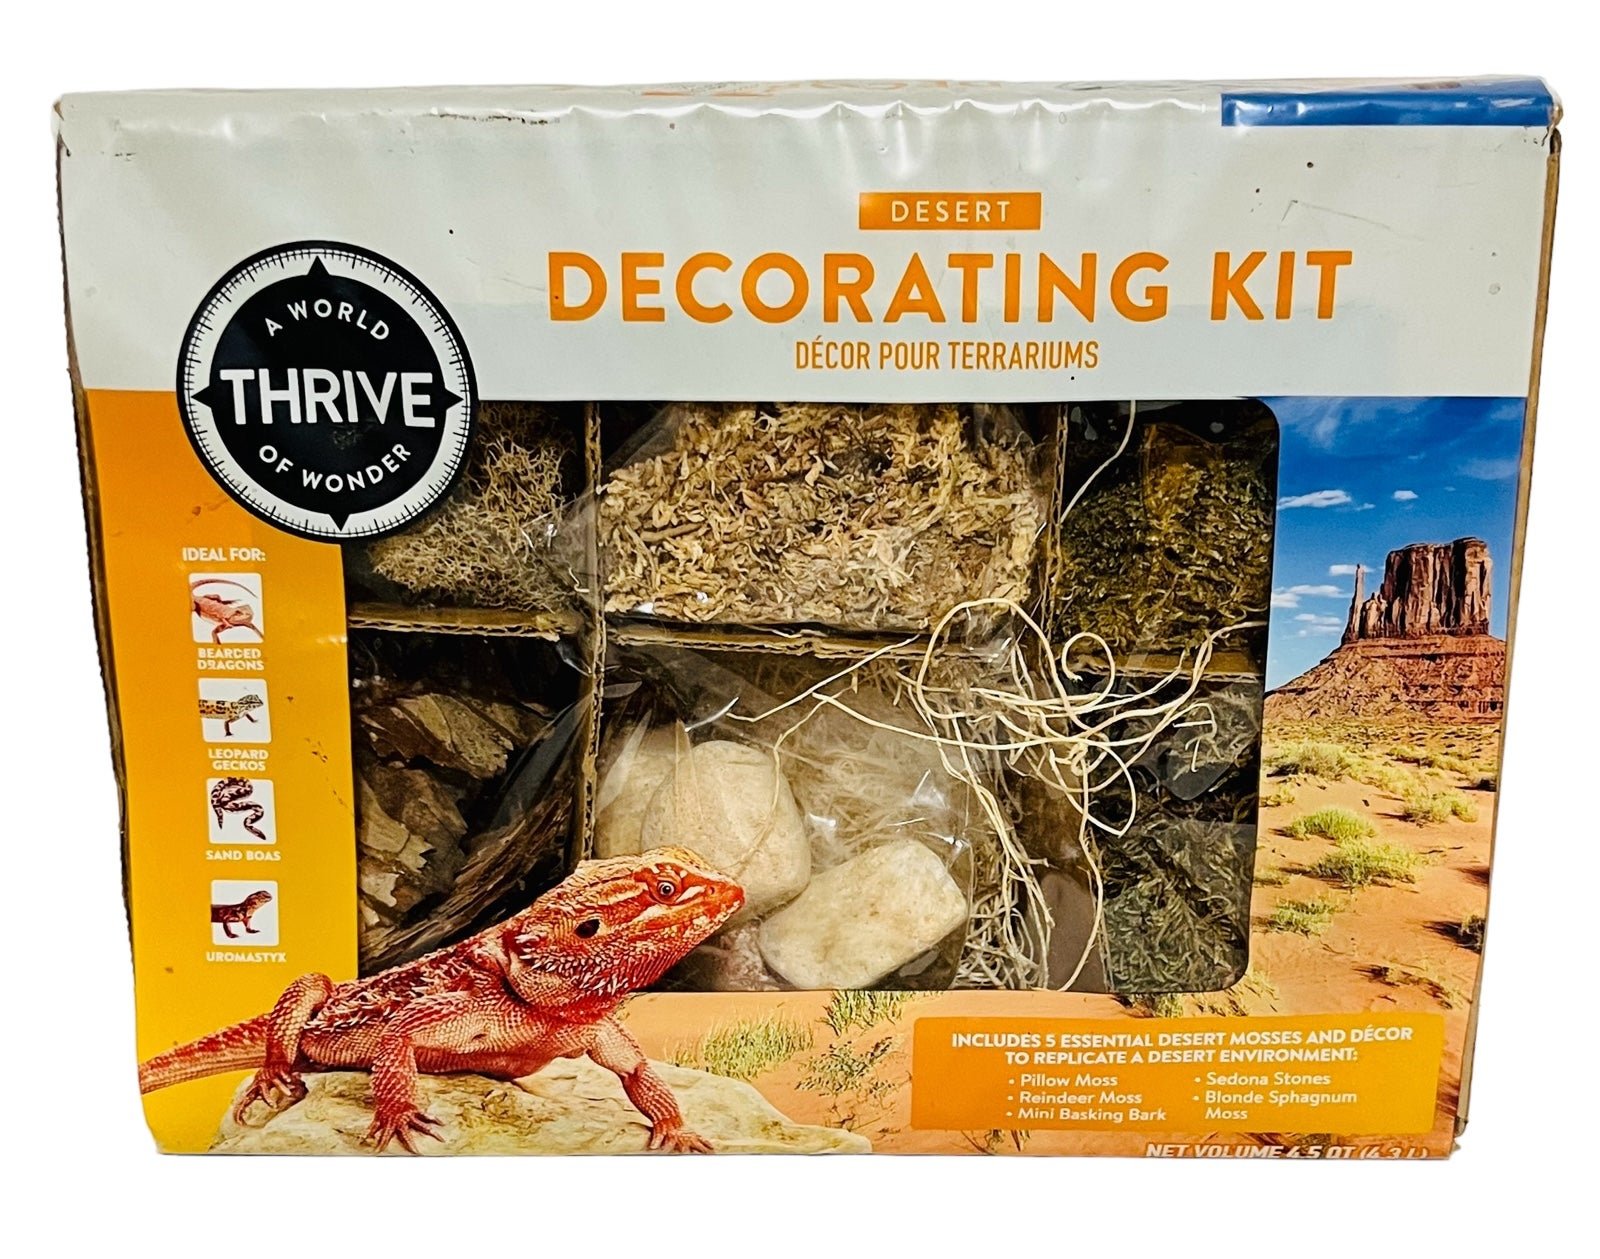 Desert Decorating Kit For Terrarium, Reptiles, Lizards, Snakes - THRIVE - NEW 5b2YDjHEs